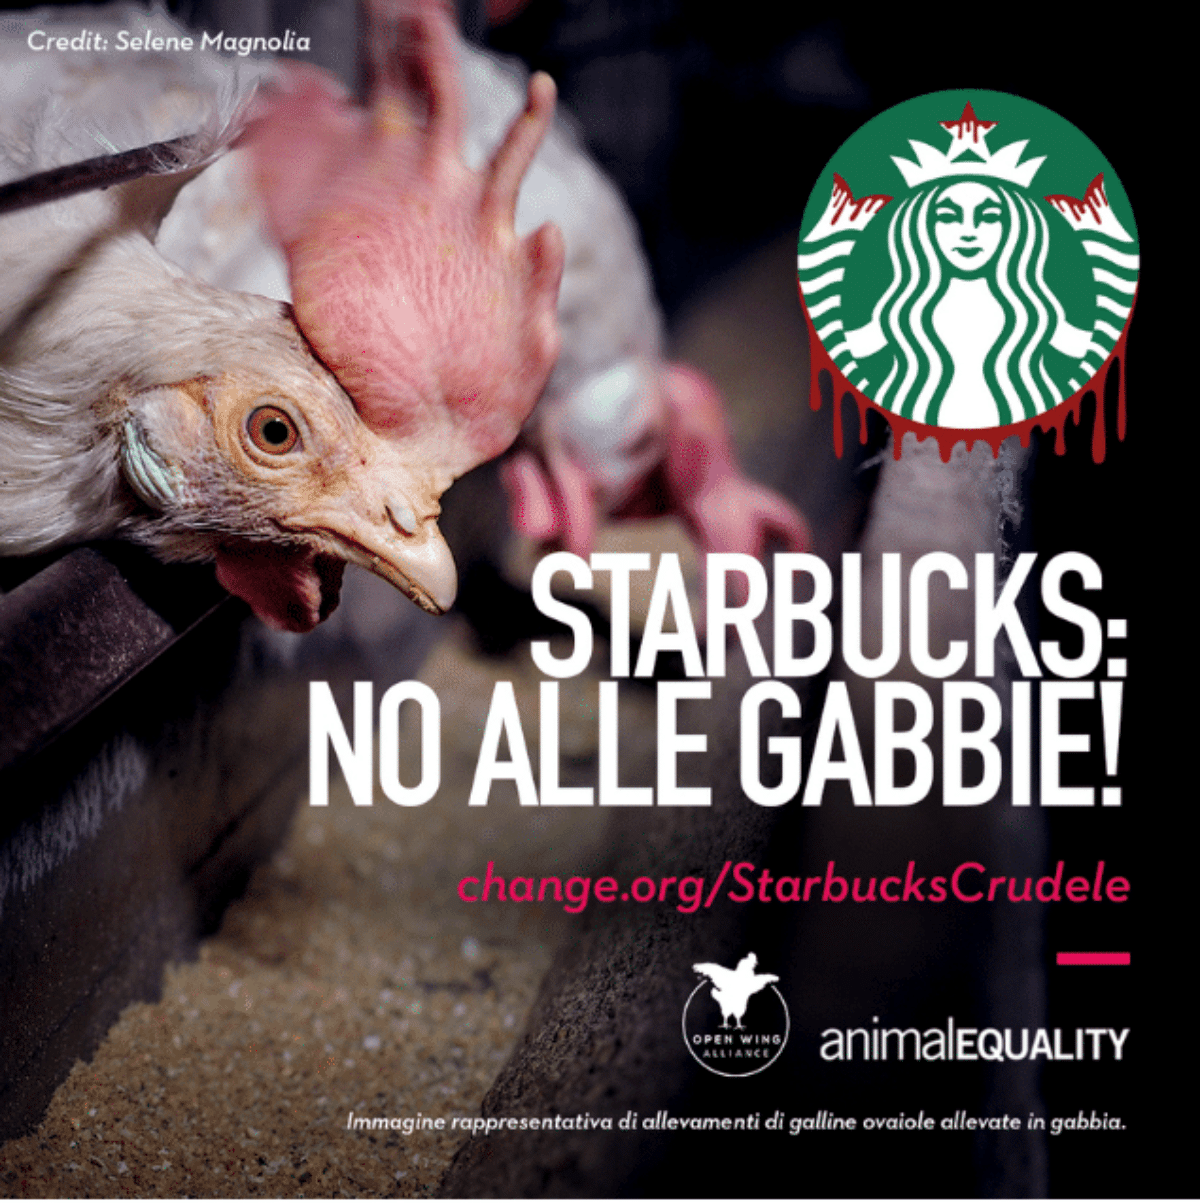 petizione contro starbucks galline